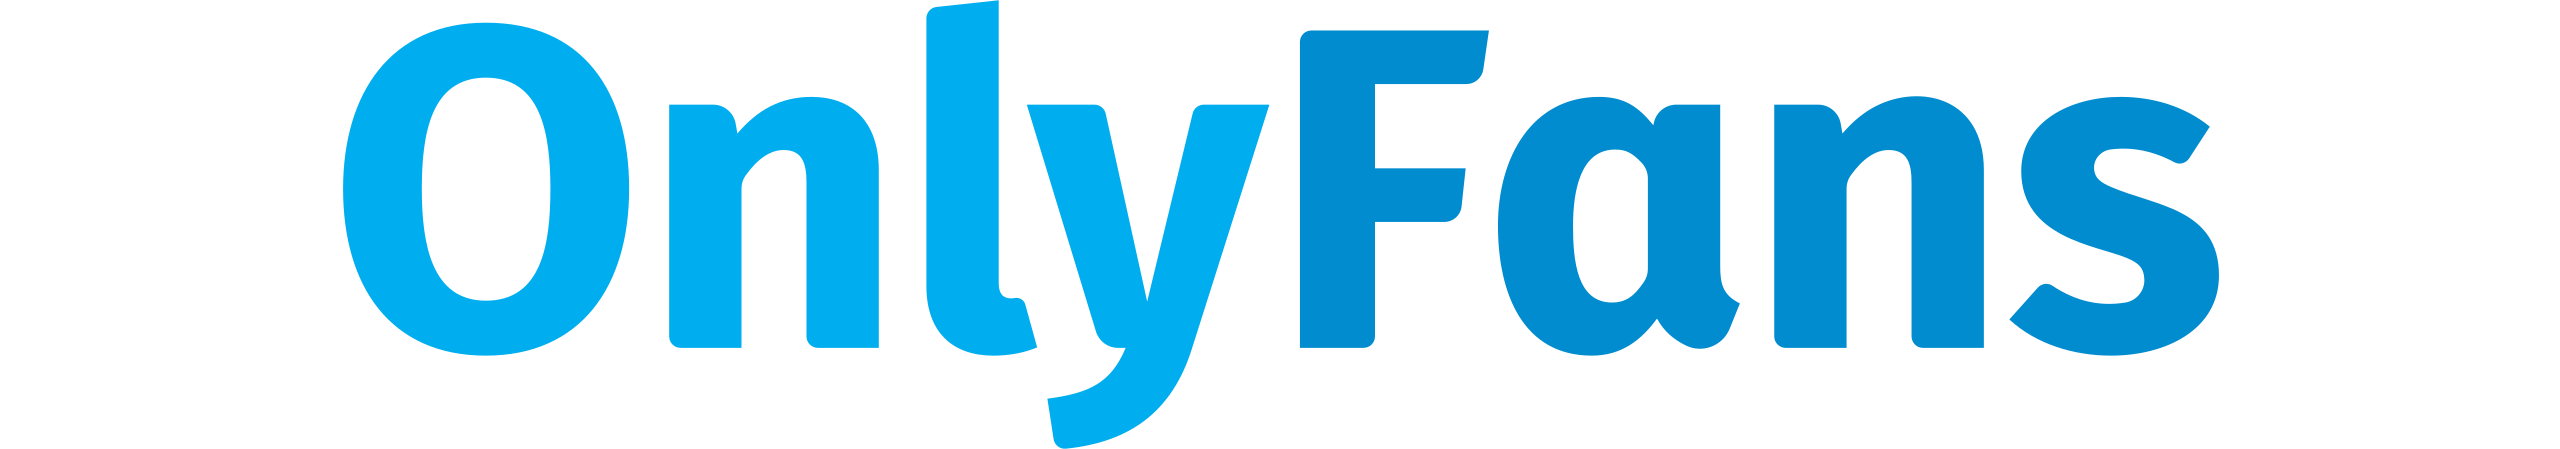 OnlyFans_logo.svg